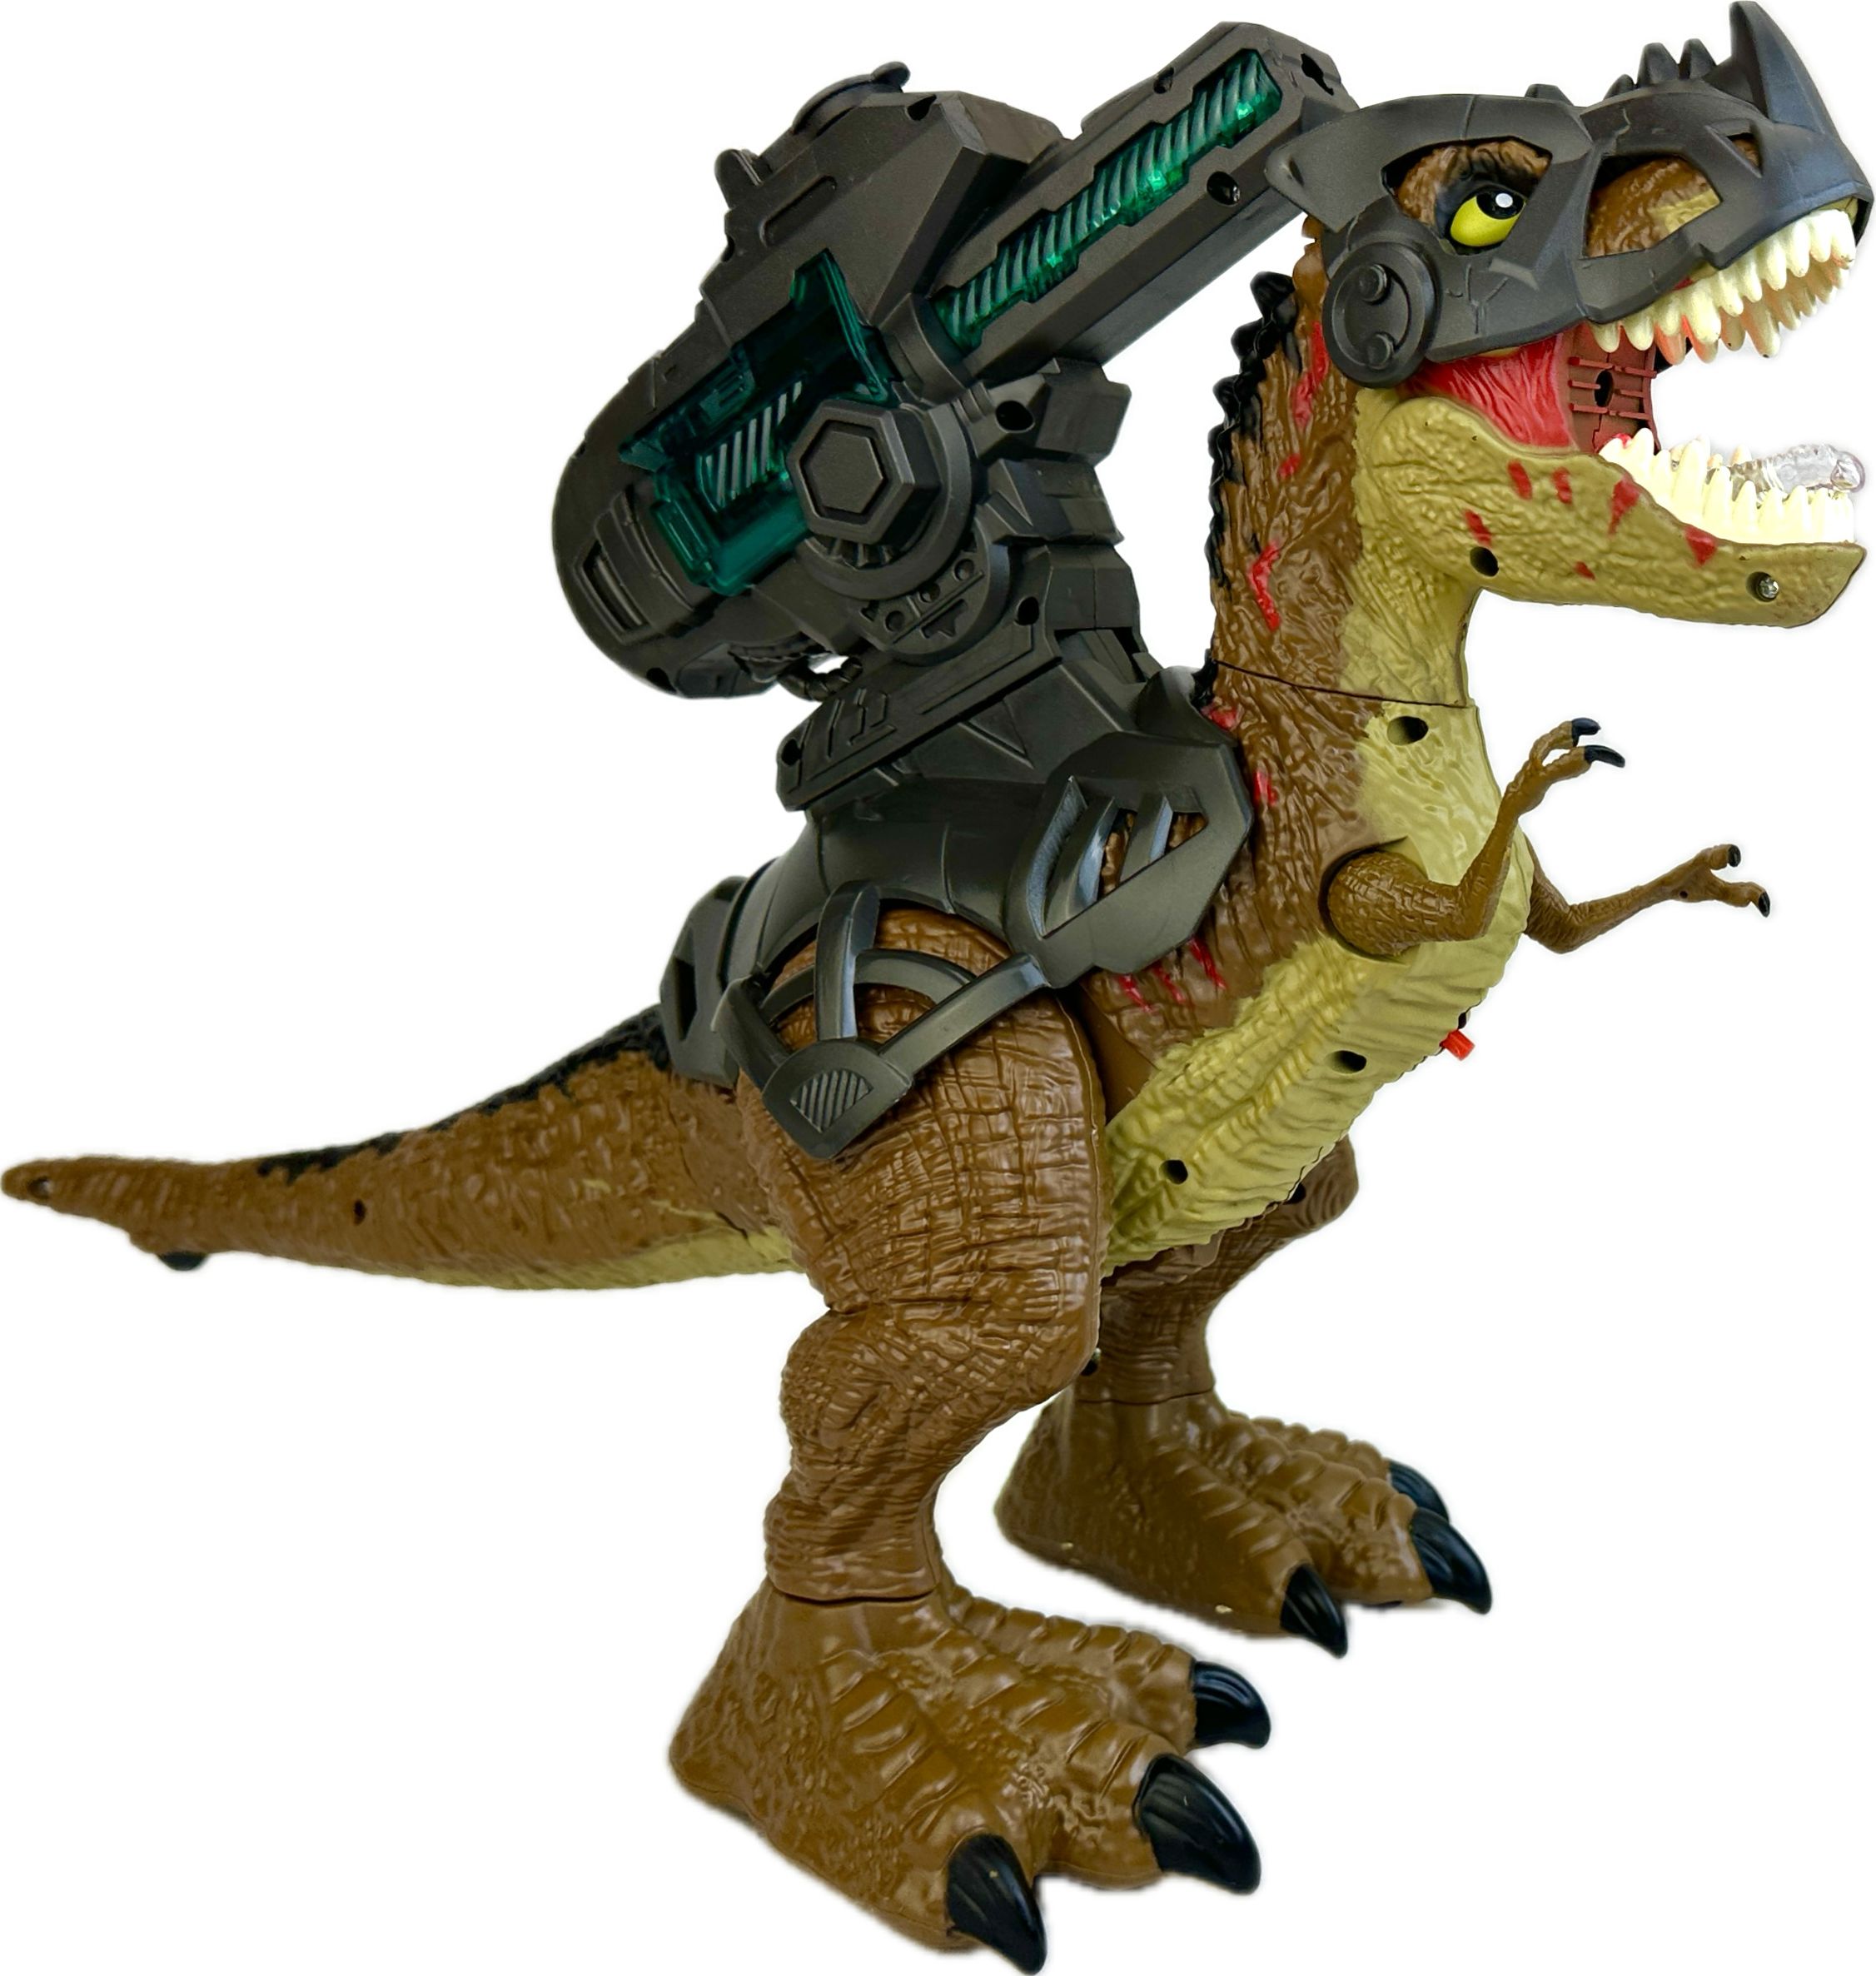 Радиоуправляемый робот Dinosaurs Island Toys динозавр Тираннозавр стреляет jiabaile интерактивная игрушка динозавр на пульте управления jungle overlord